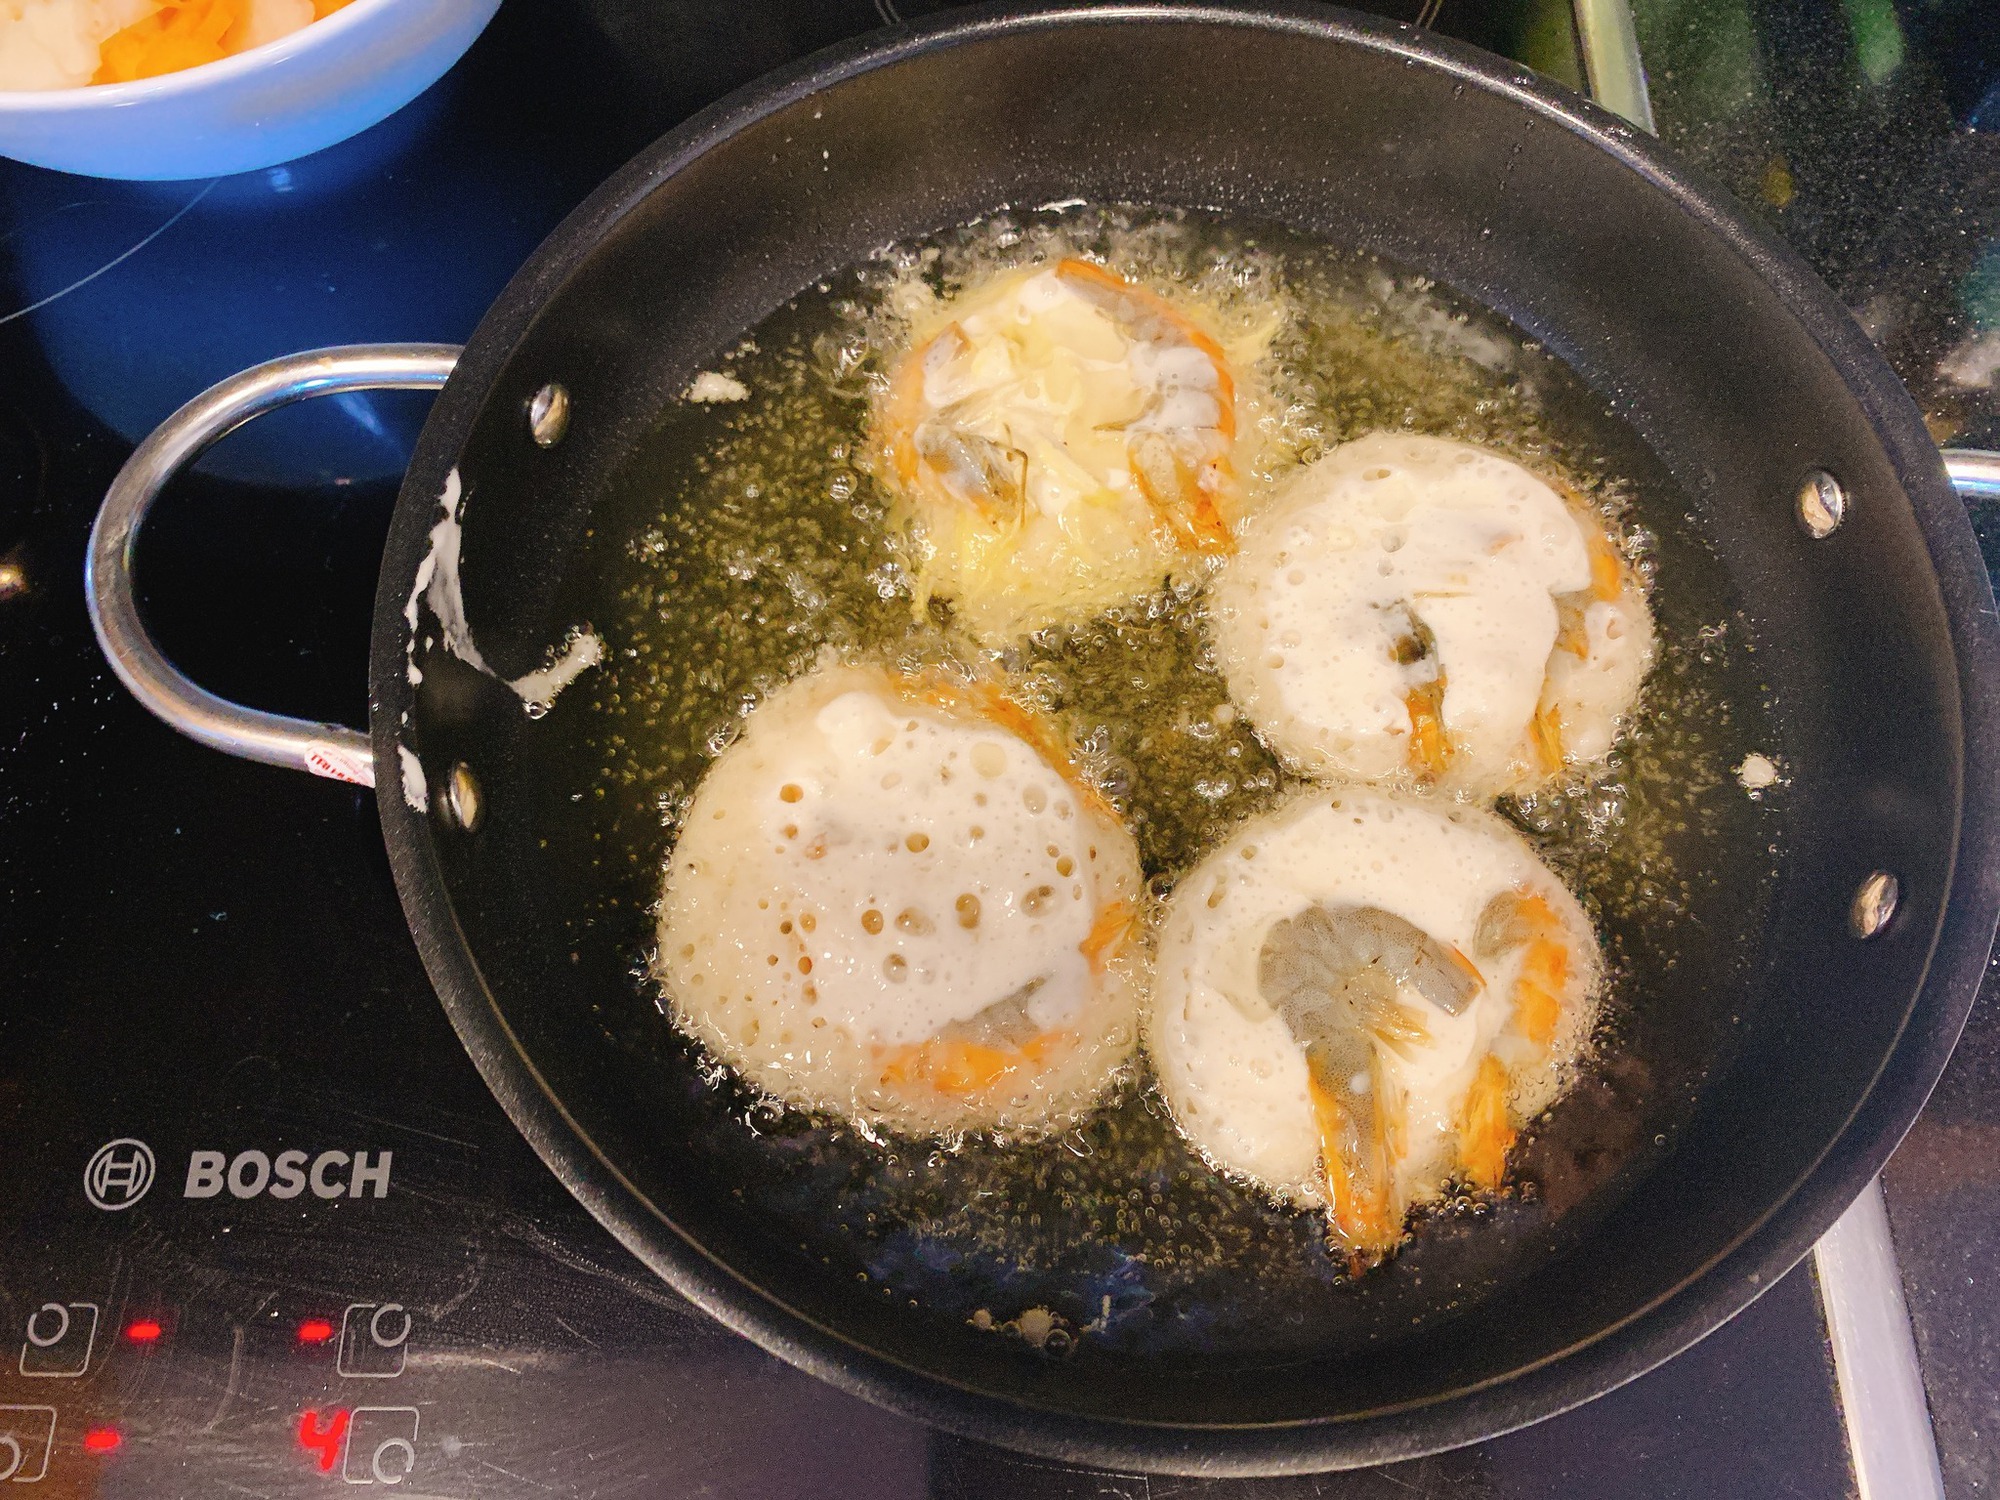 Loại thủy hải sản giàu protein, không chỉ luộc hấp rim mà dùng làm bánh cực ngon - Ảnh 3.